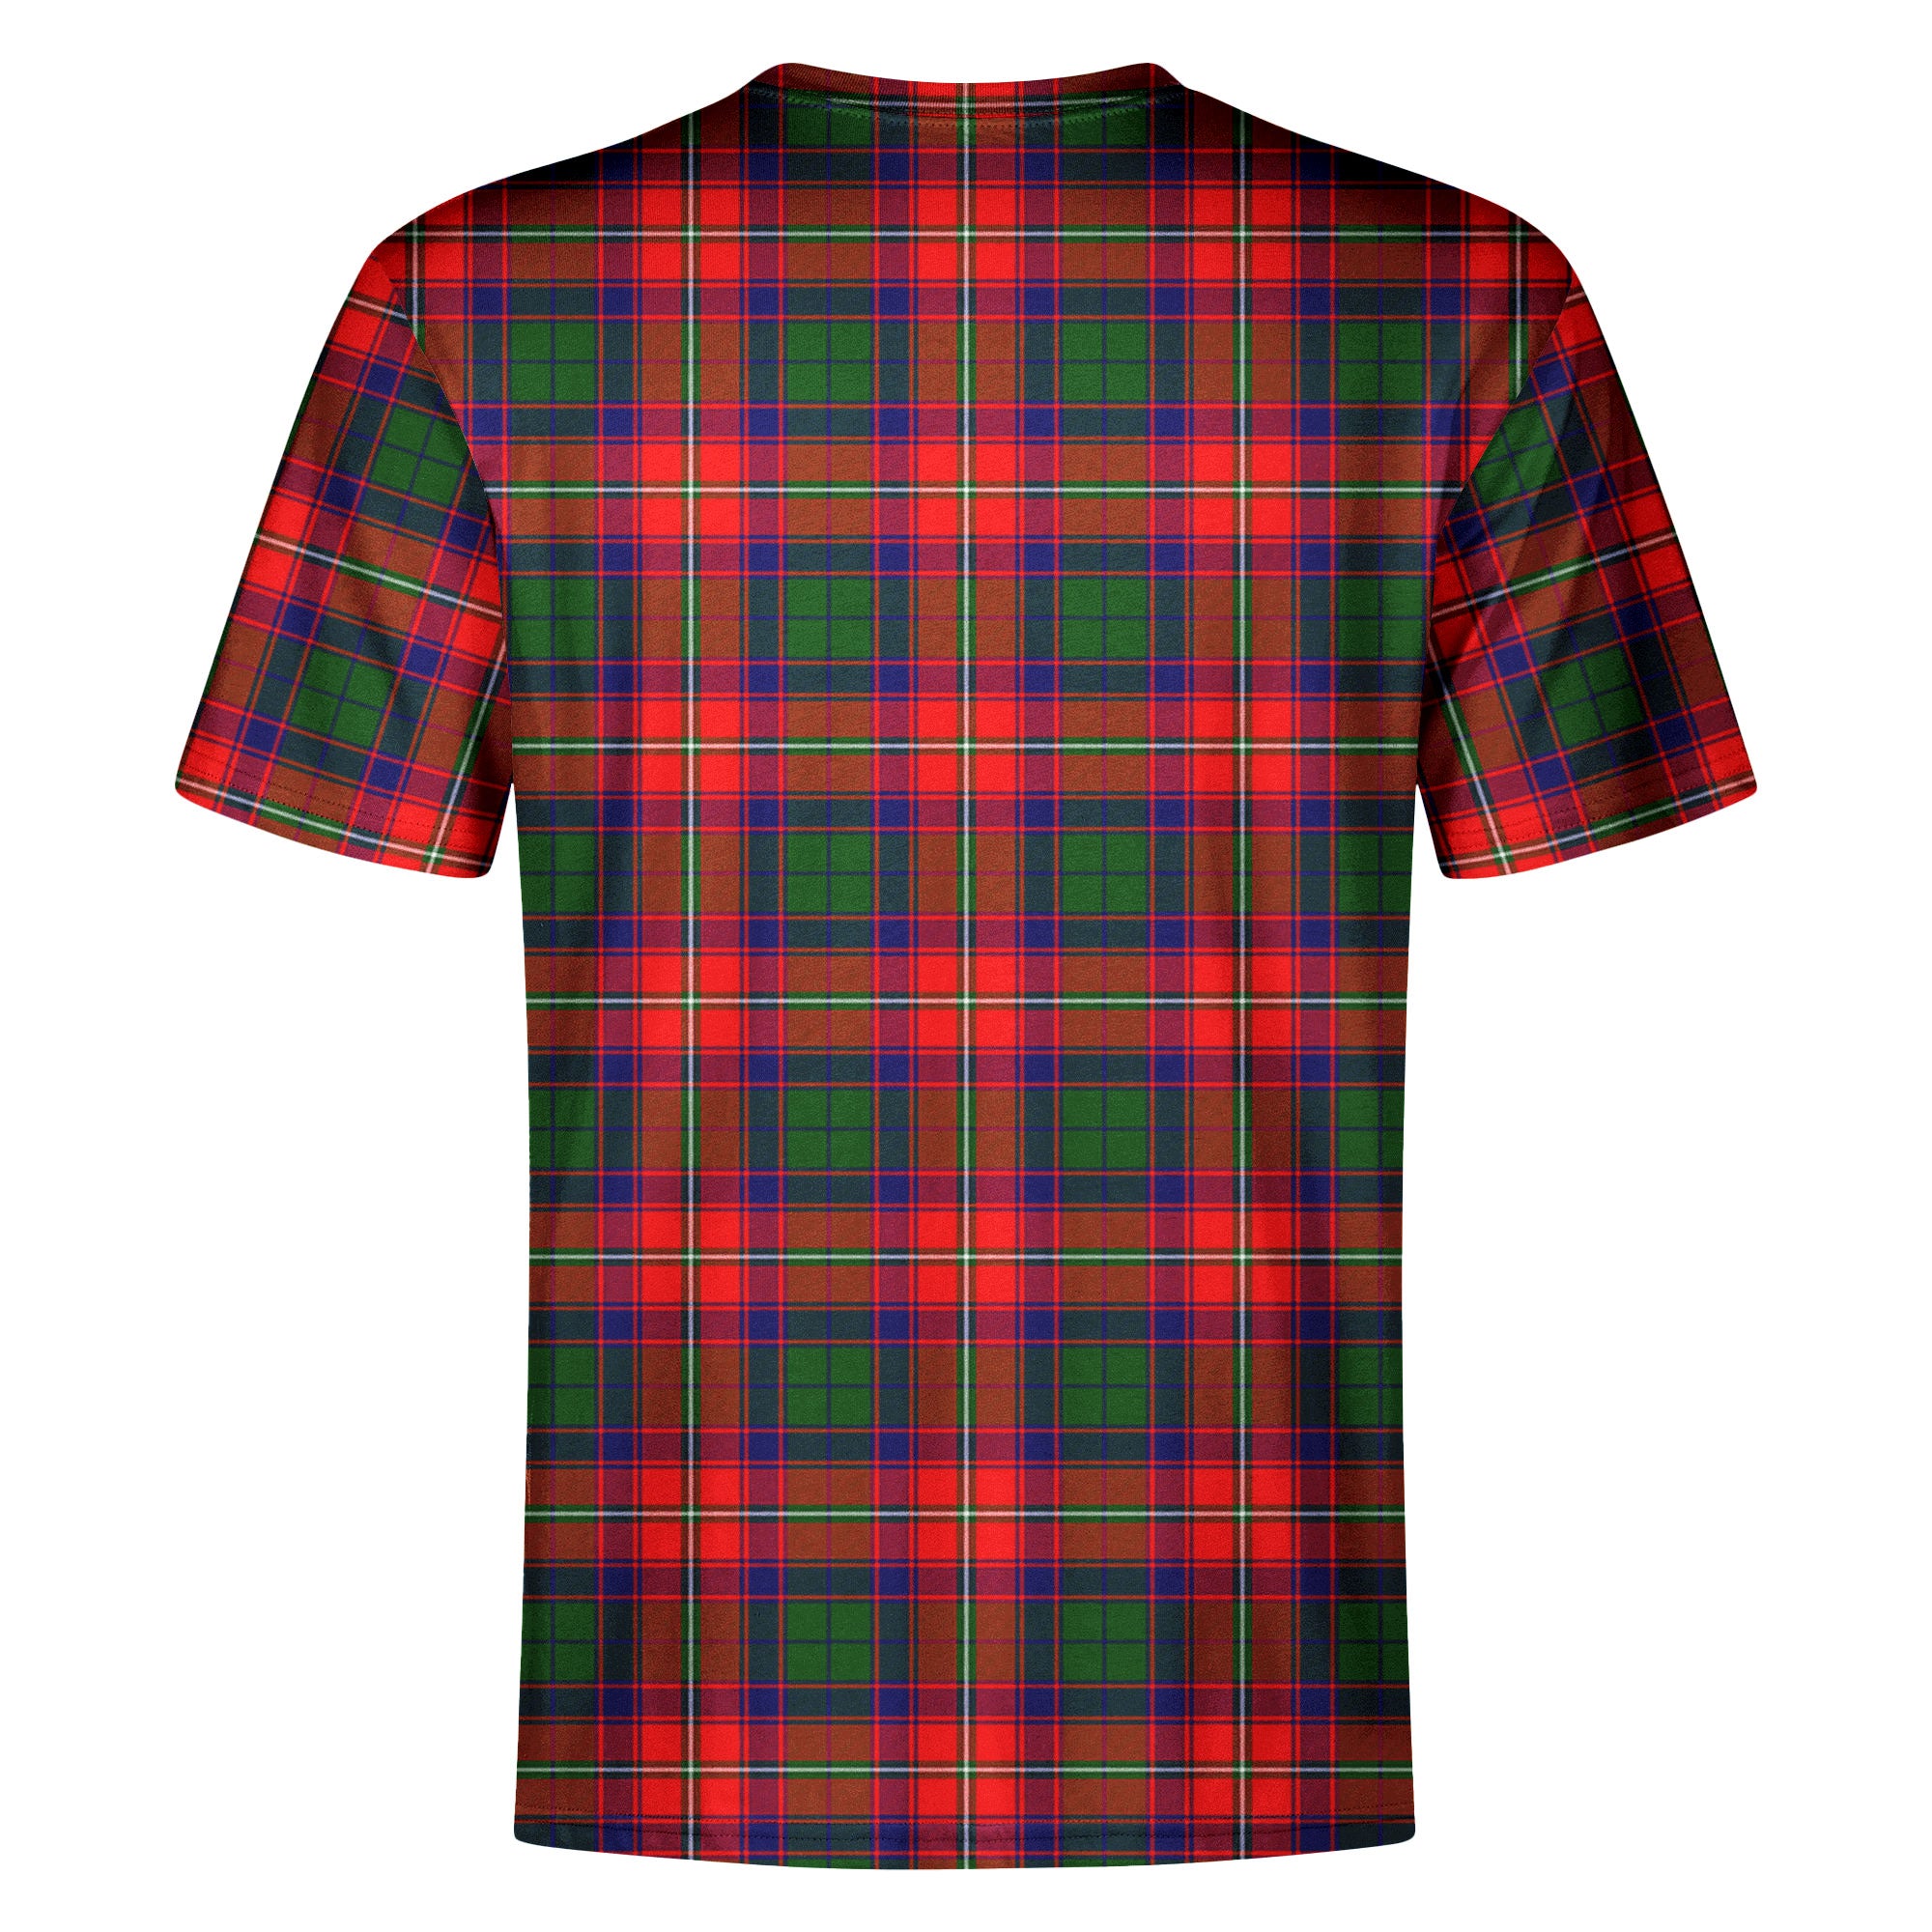 Belshes Tartan Crest T-shirt